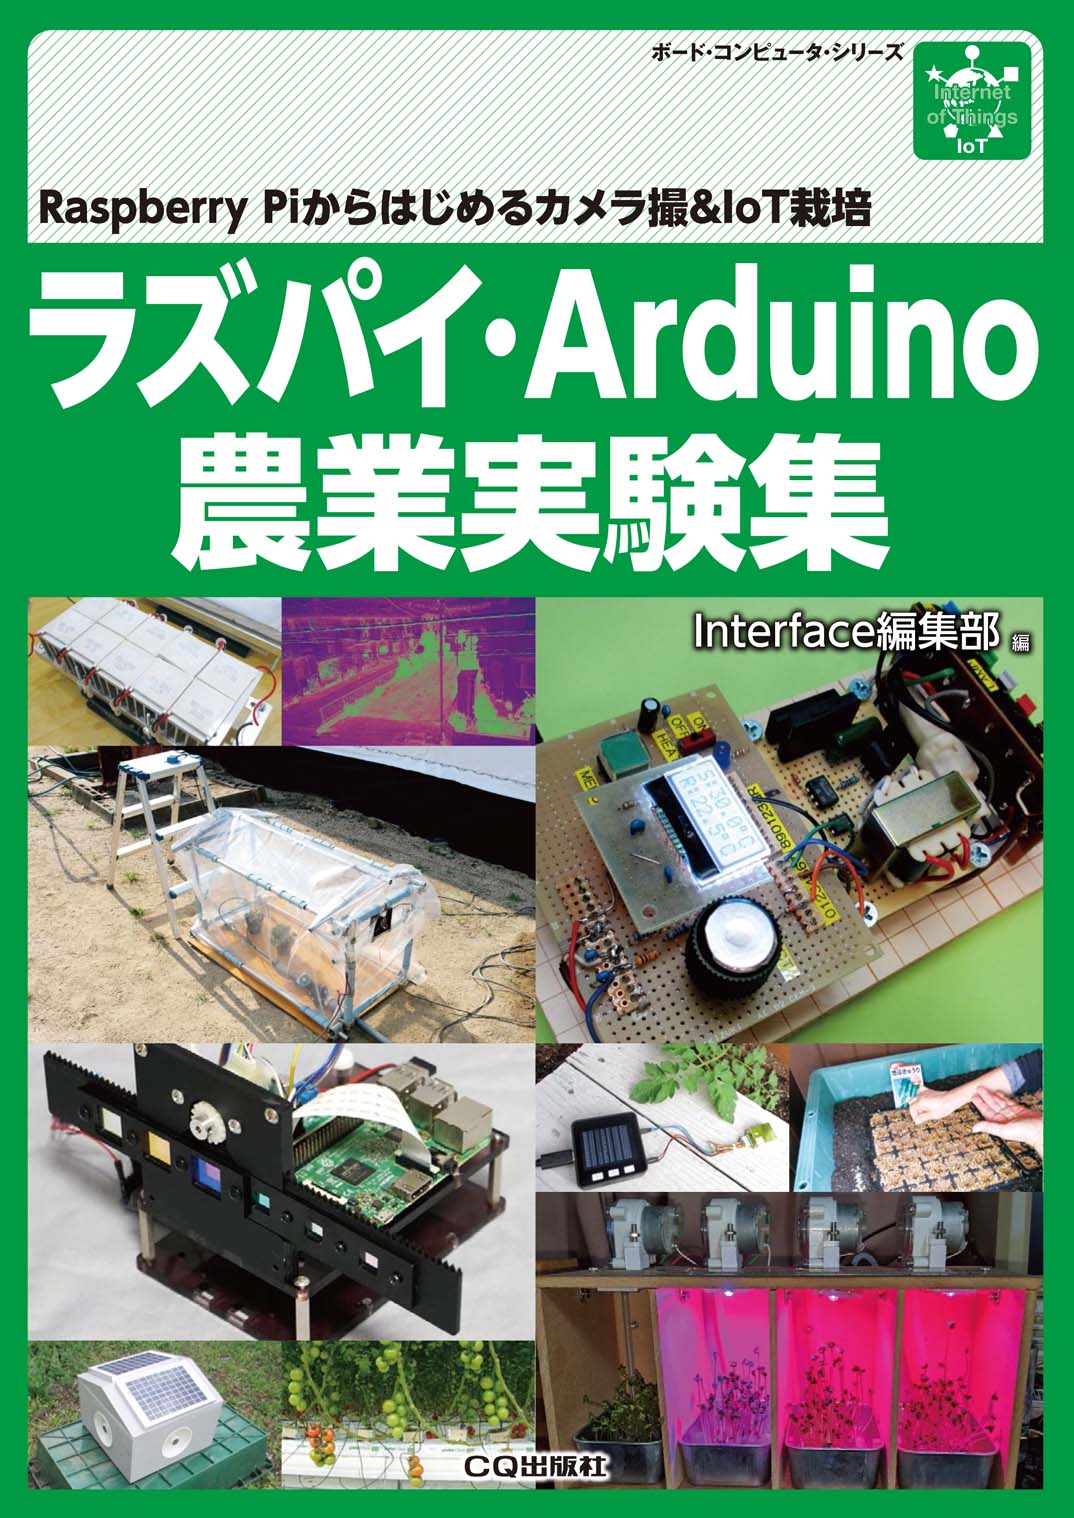 ラズパイ・Arduino農業実験集の商品画像